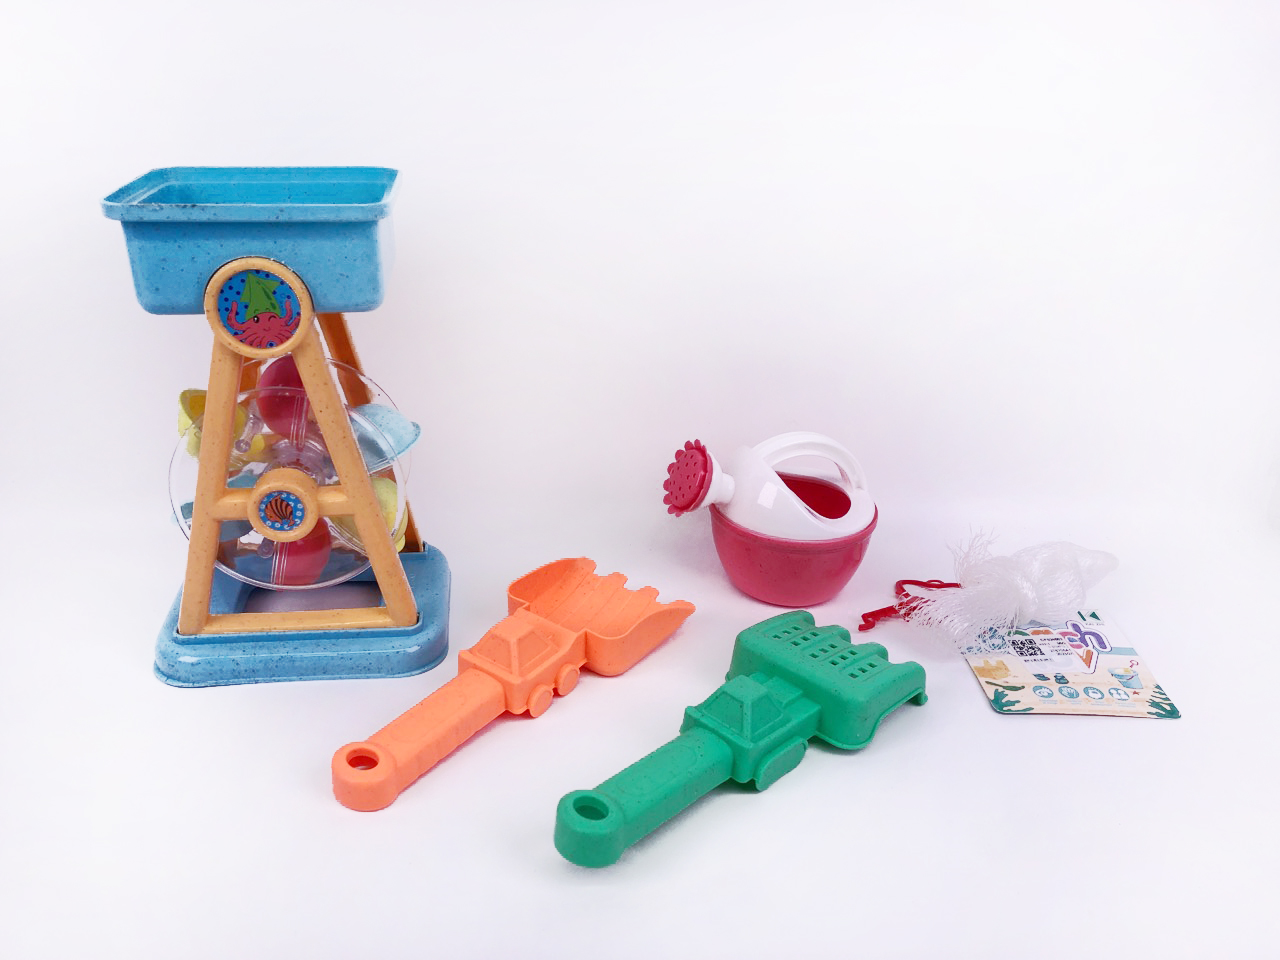 Sand Sprinkler(4in1) toys